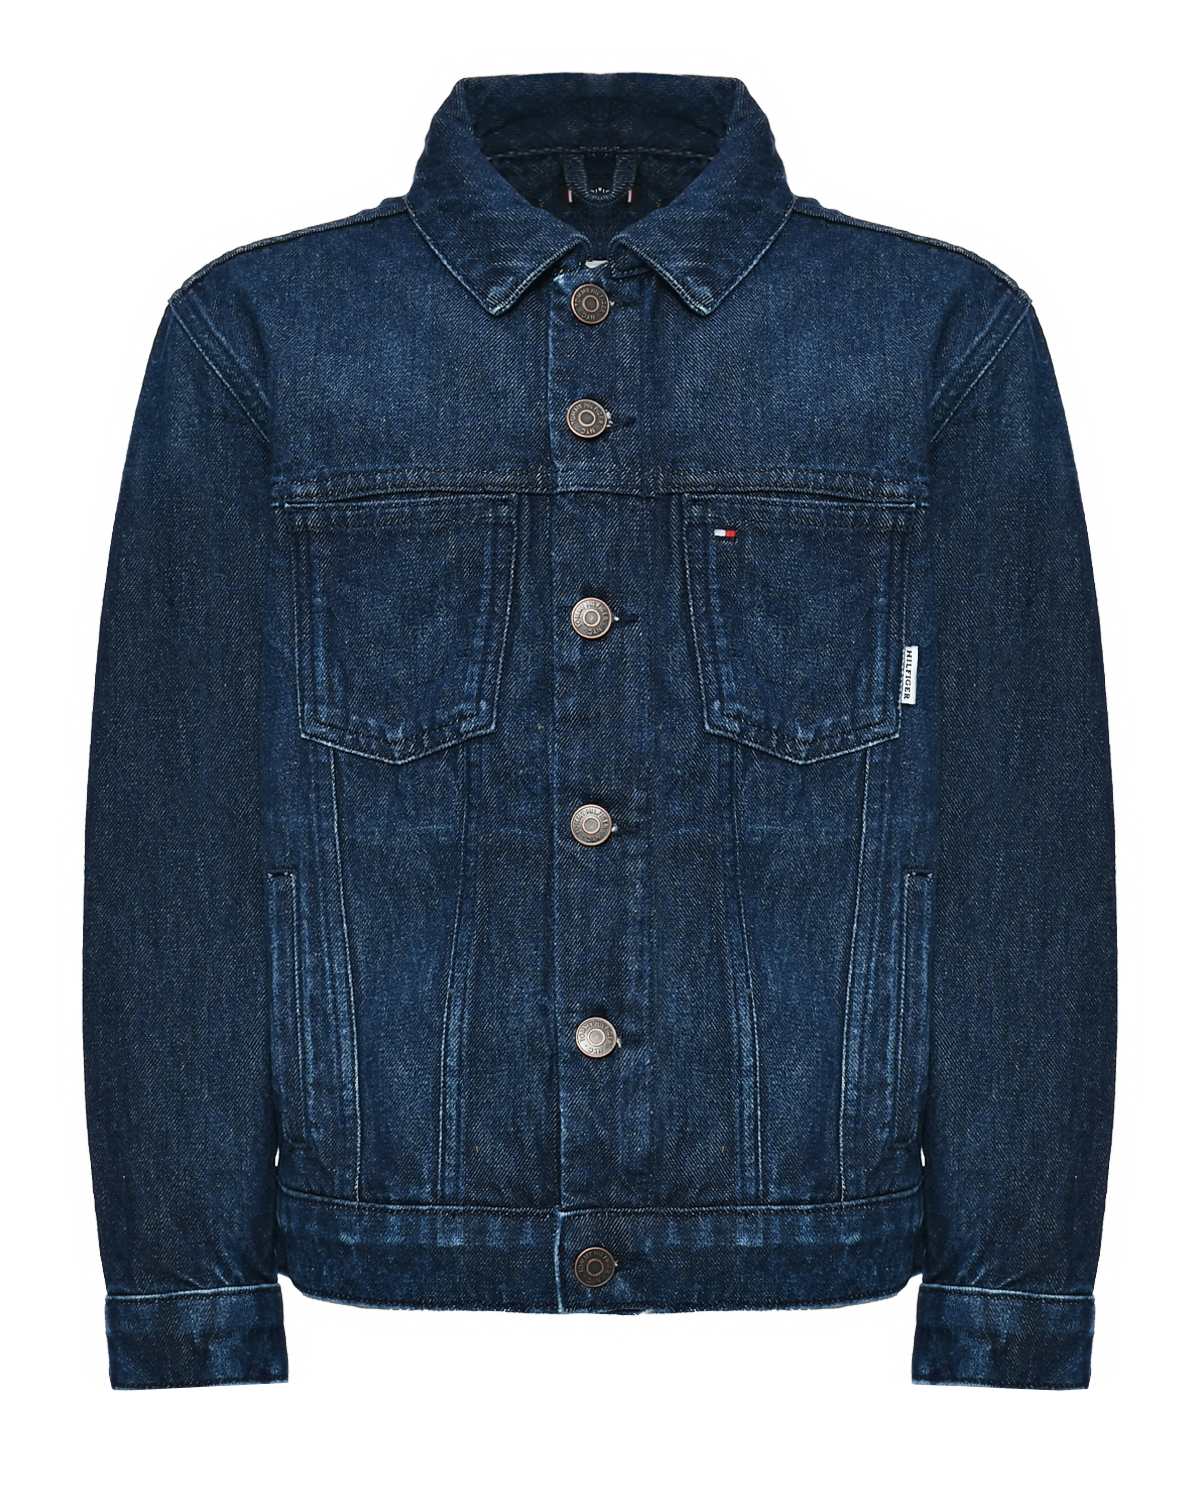 Джинсовая куртка синего цвета Tommy Hilfiger, размер 176